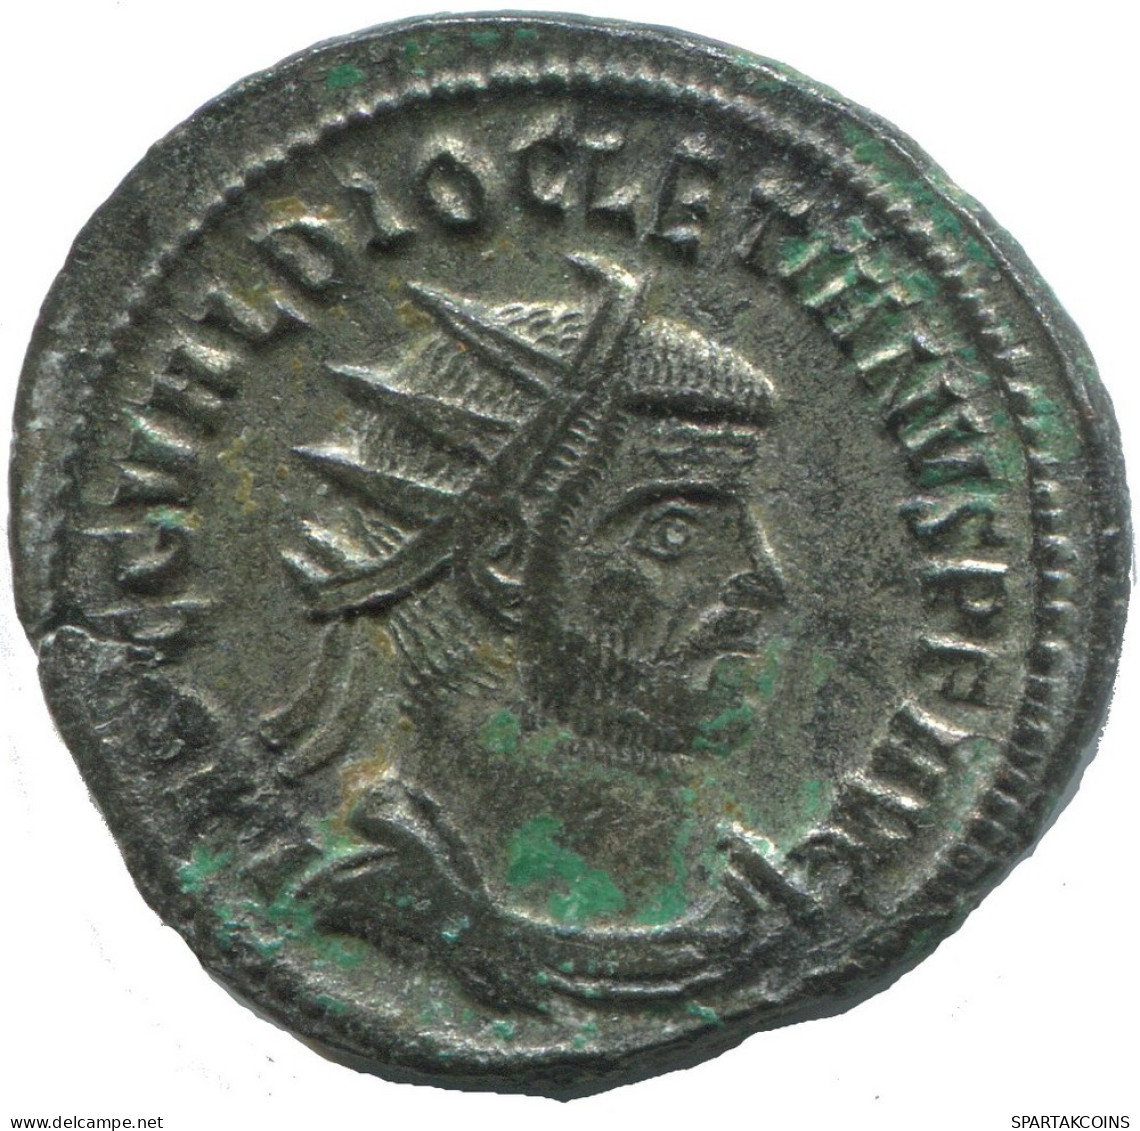 DIOCLETIAN CYZICUS Z XXI AD293-295 SILVERED ROMAN Pièce 3.9g/23mm #ANT2691.41.F.A - La Tetrarchía Y Constantino I El Magno (284 / 307)